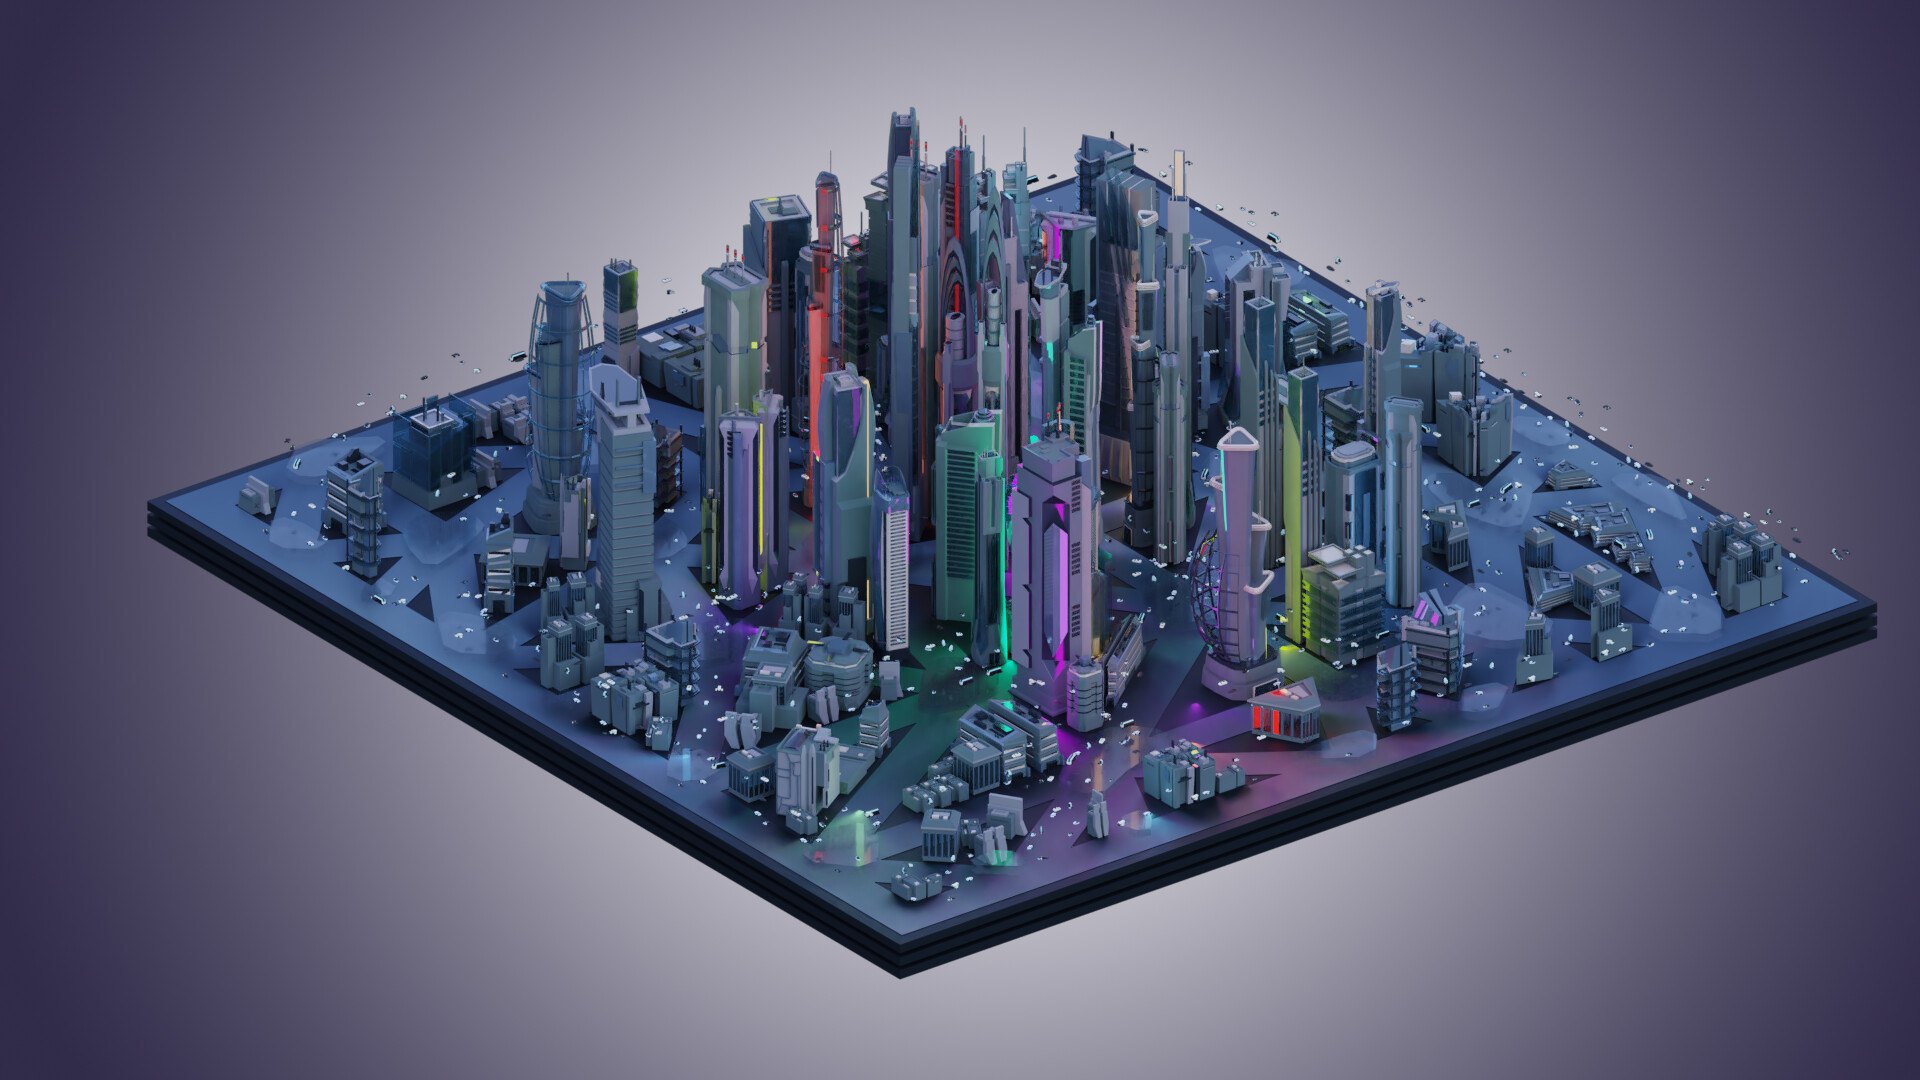 Based con. Scifi City архитектура 3d model лазер. 3д моделирование. Модель города будущего. Трехмерное моделирование.